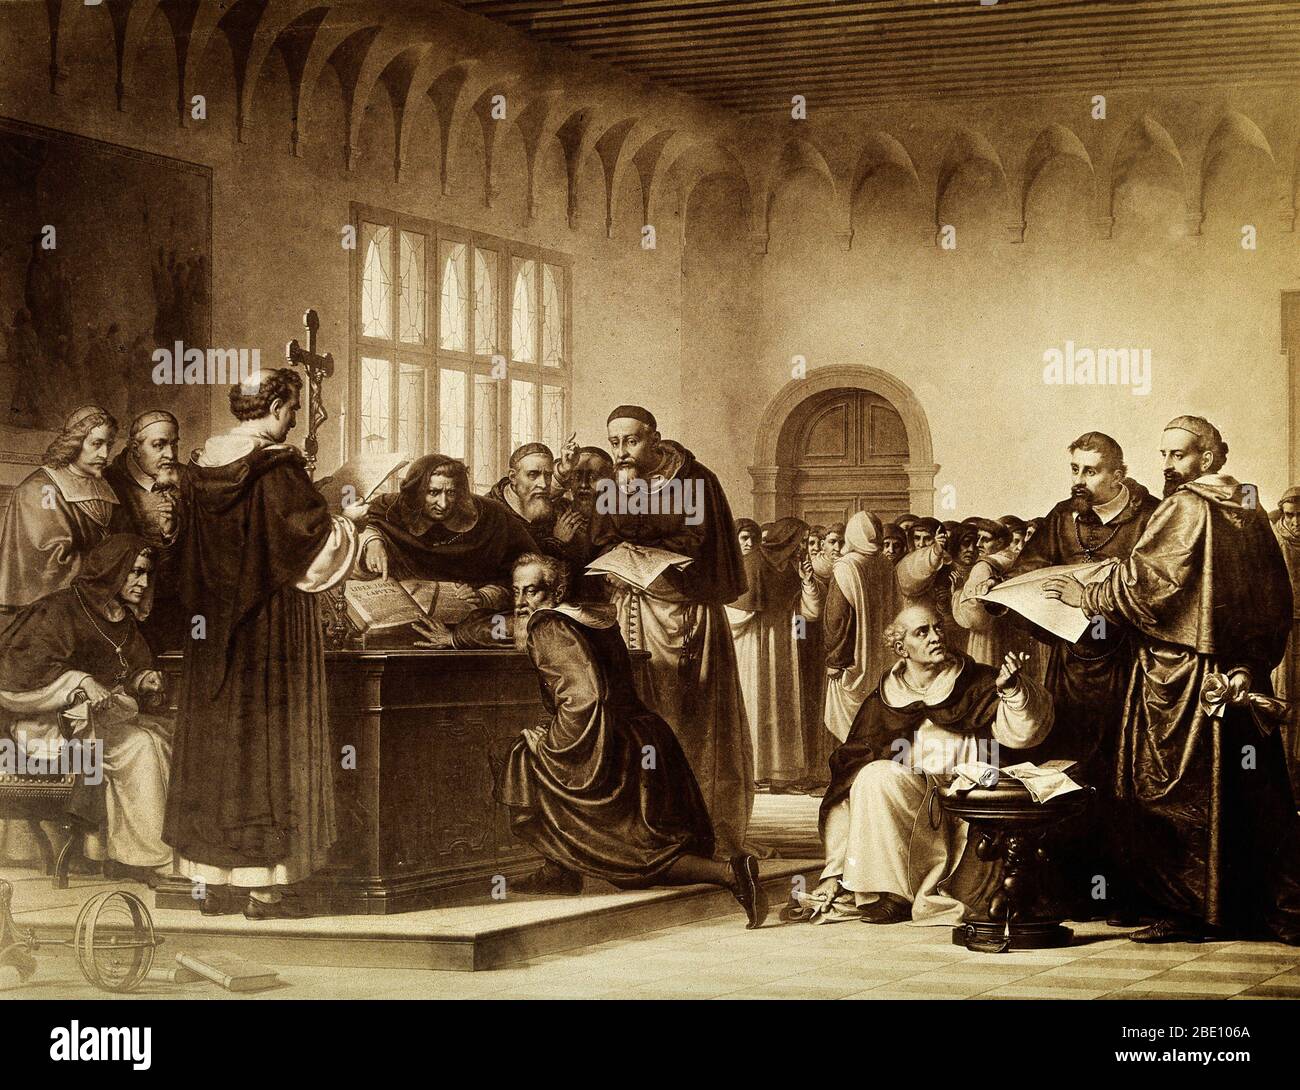 Galileo Galilei en su juicio por la Inquisición en Roma en 1633. Se le muestra empujando la Biblia. Galileo Galilei (15 de febrero de 1564 - 8 de enero de 1642) fue un físico, matemático, astrónomo y filósofo italiano. Galileo fue el primero en usar con éxito un telescopio para observar los cielos, descubriendo nuevas estrellas, montañas en la Luna y las fases de Venus. Su descubrimiento de las Lones que rodearon Júpiter, no la Tierra, ofreció apoyo al controvertido sistema Copernicano que quitó la Tierra del centro del sistema Solar. Esto puso a Galileo en conflicto con los Catholi Foto de stock